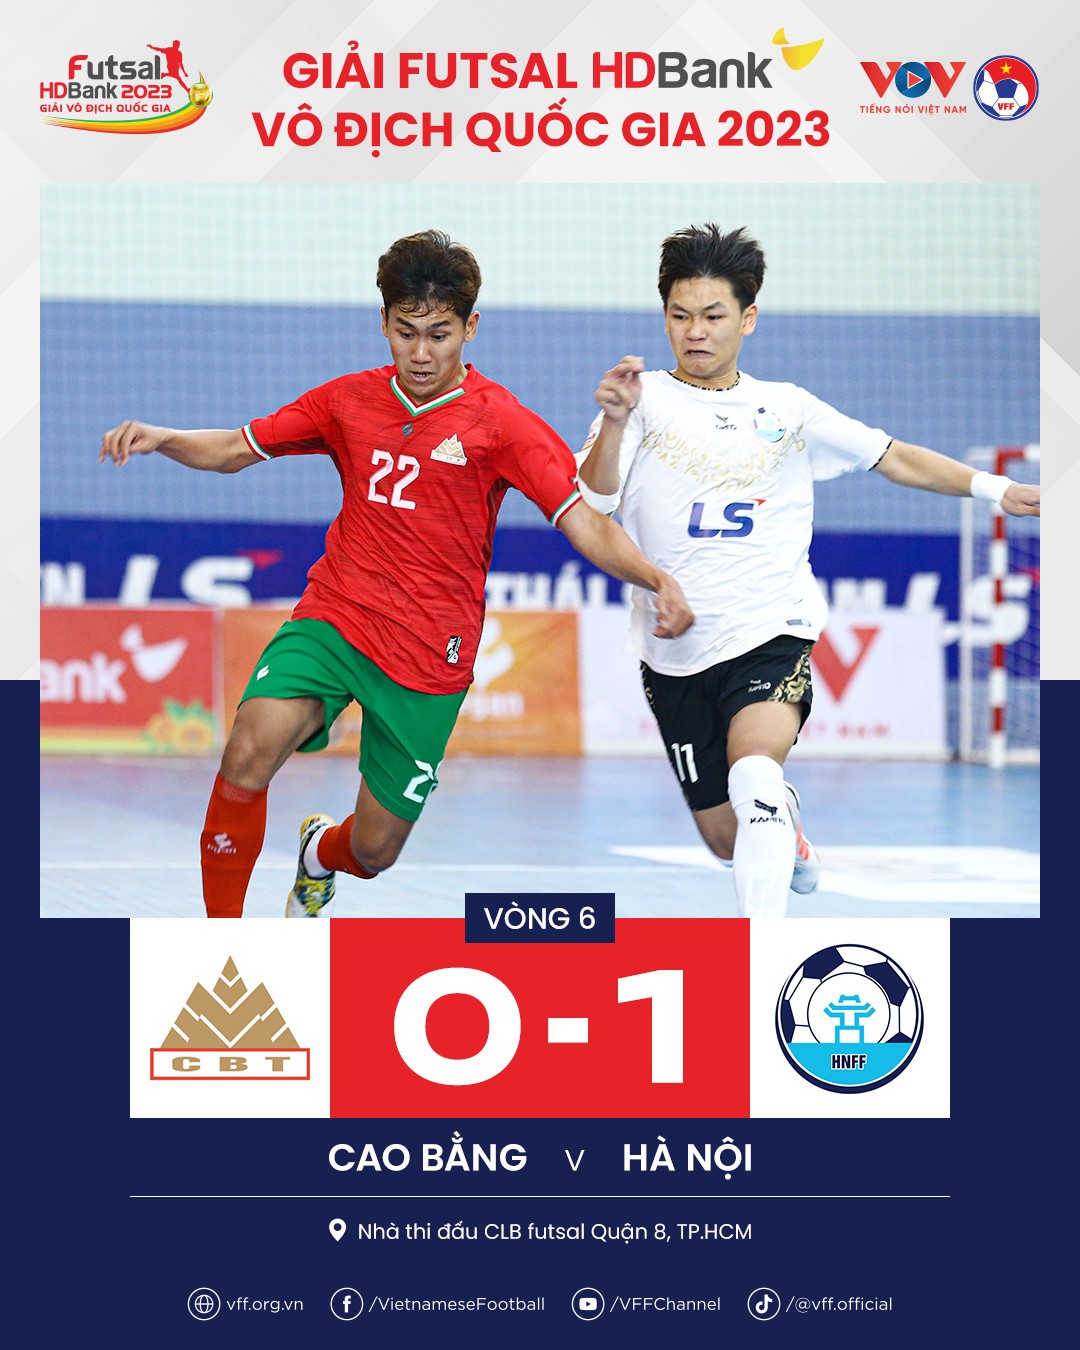 Vòng 6 Futsal HDBank VĐQG 2023: Hà Nội ôm trọn 3 điểm, Sahako thua đậm